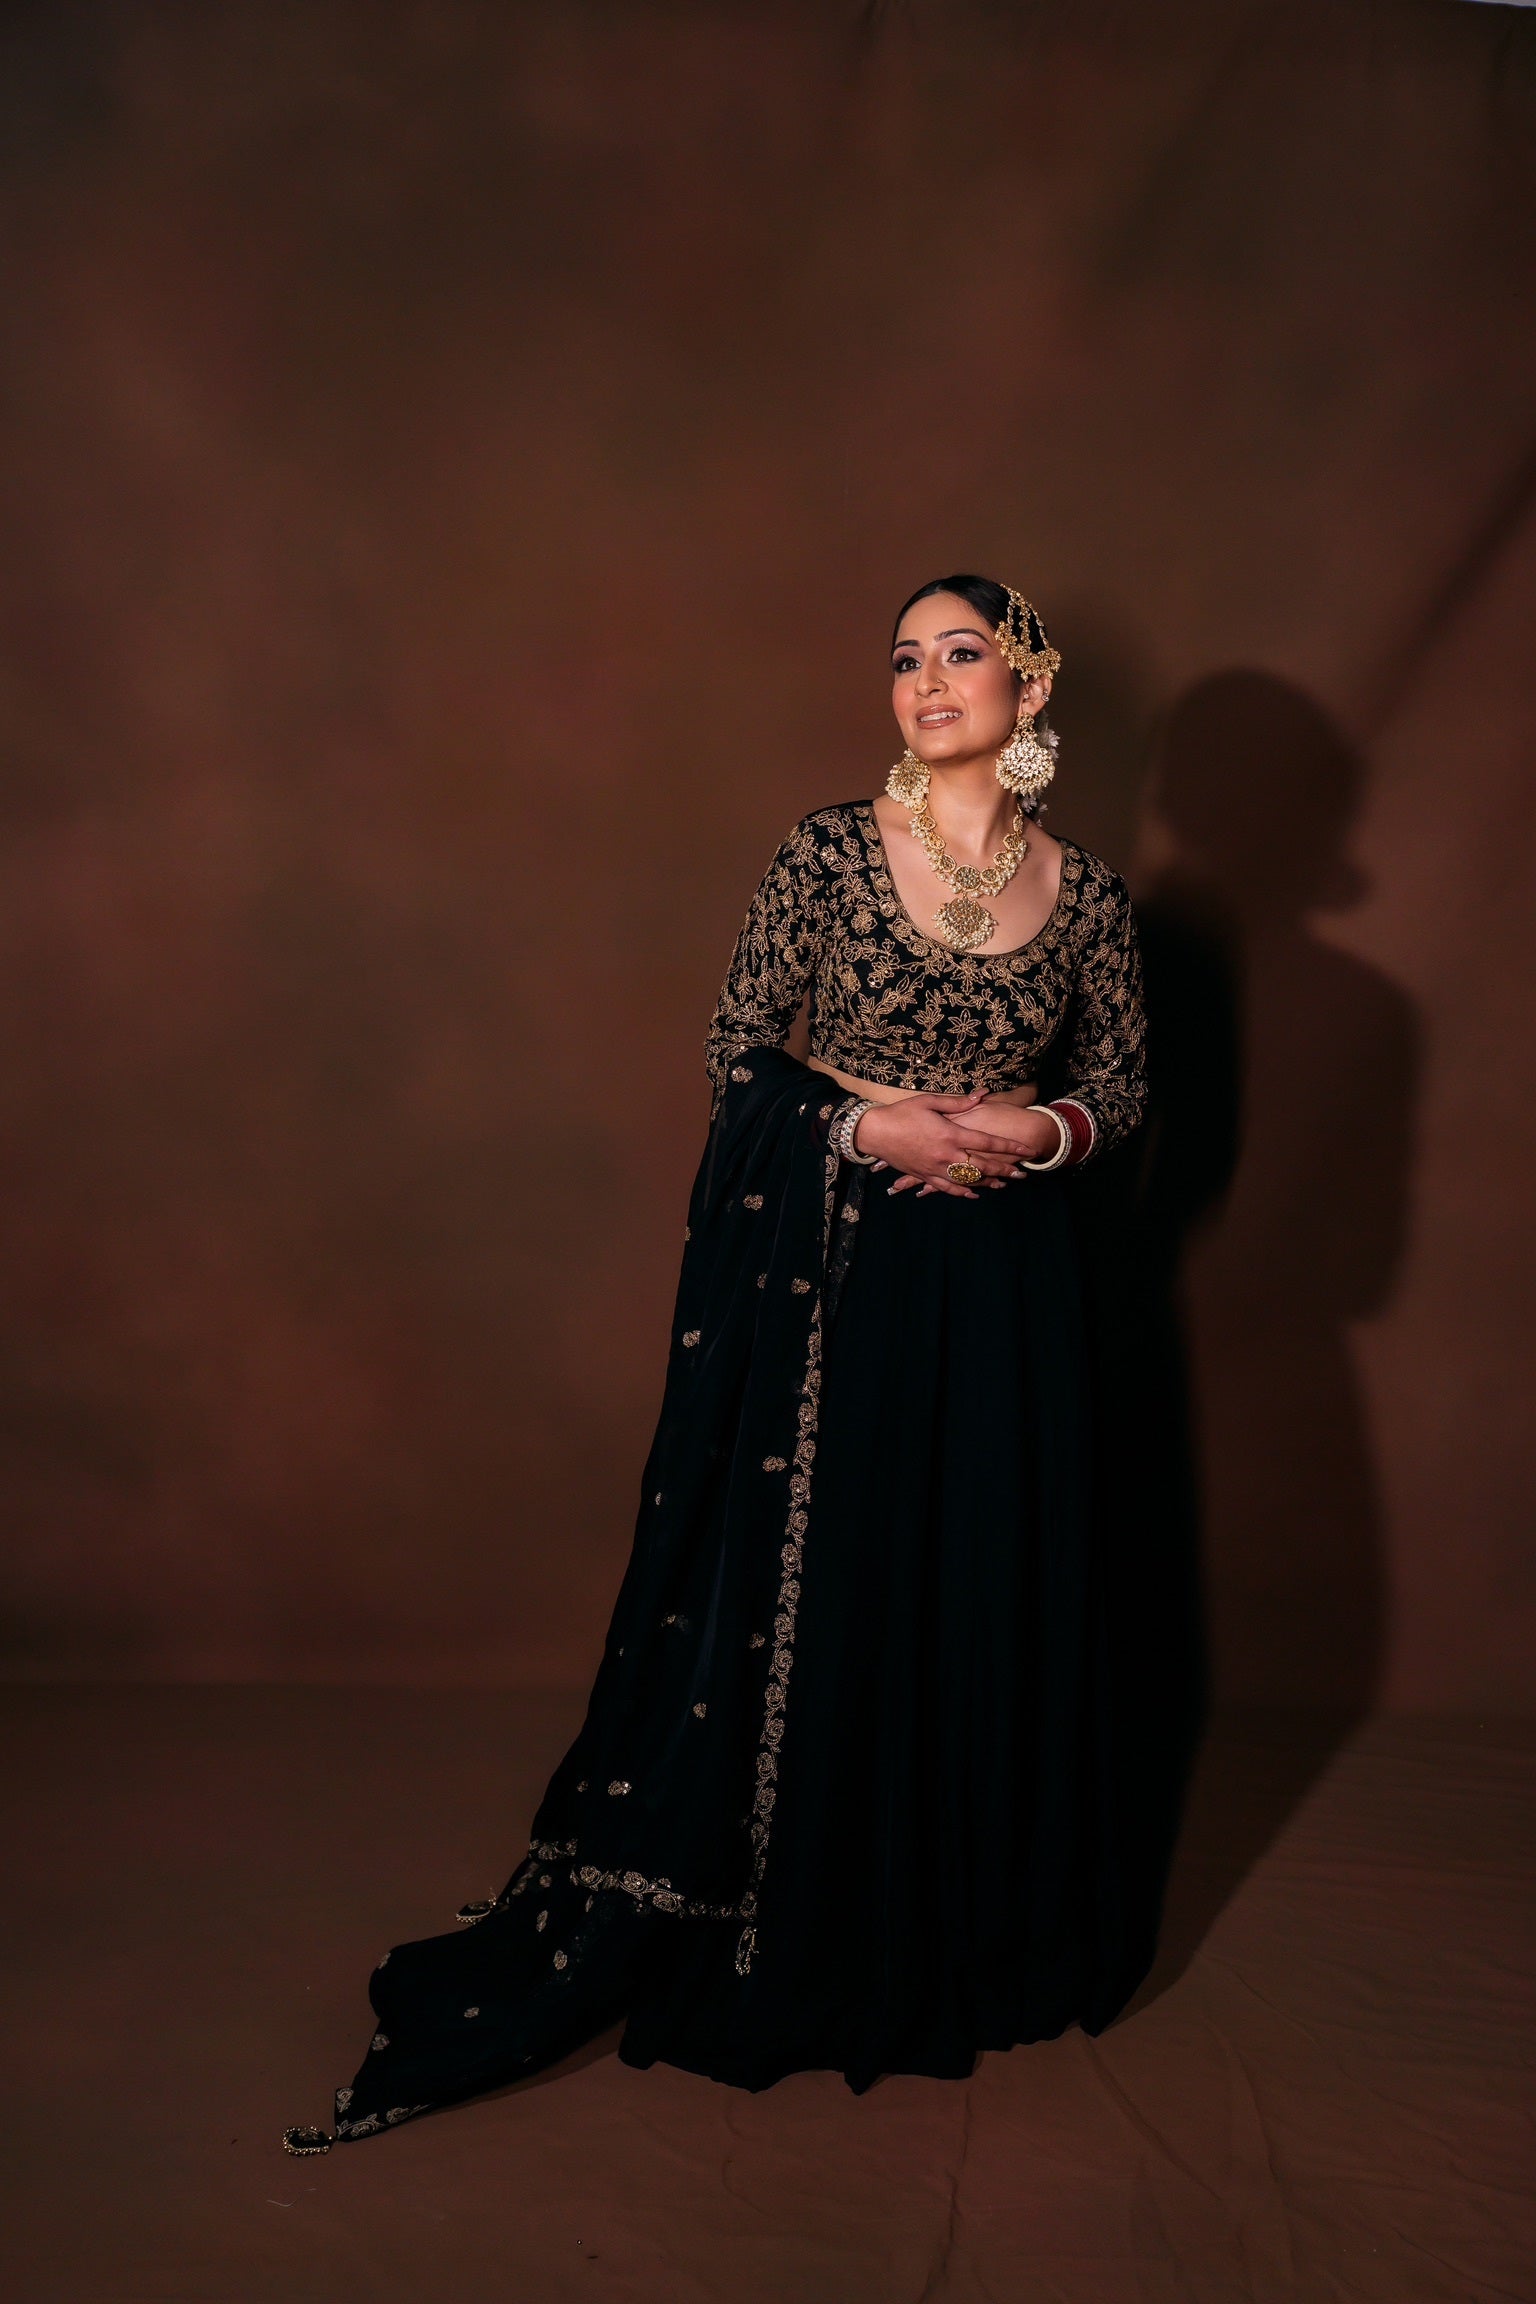 Srishti Sehgal Designs - Bridal Wear Delhi NCR | Prices & Reviews